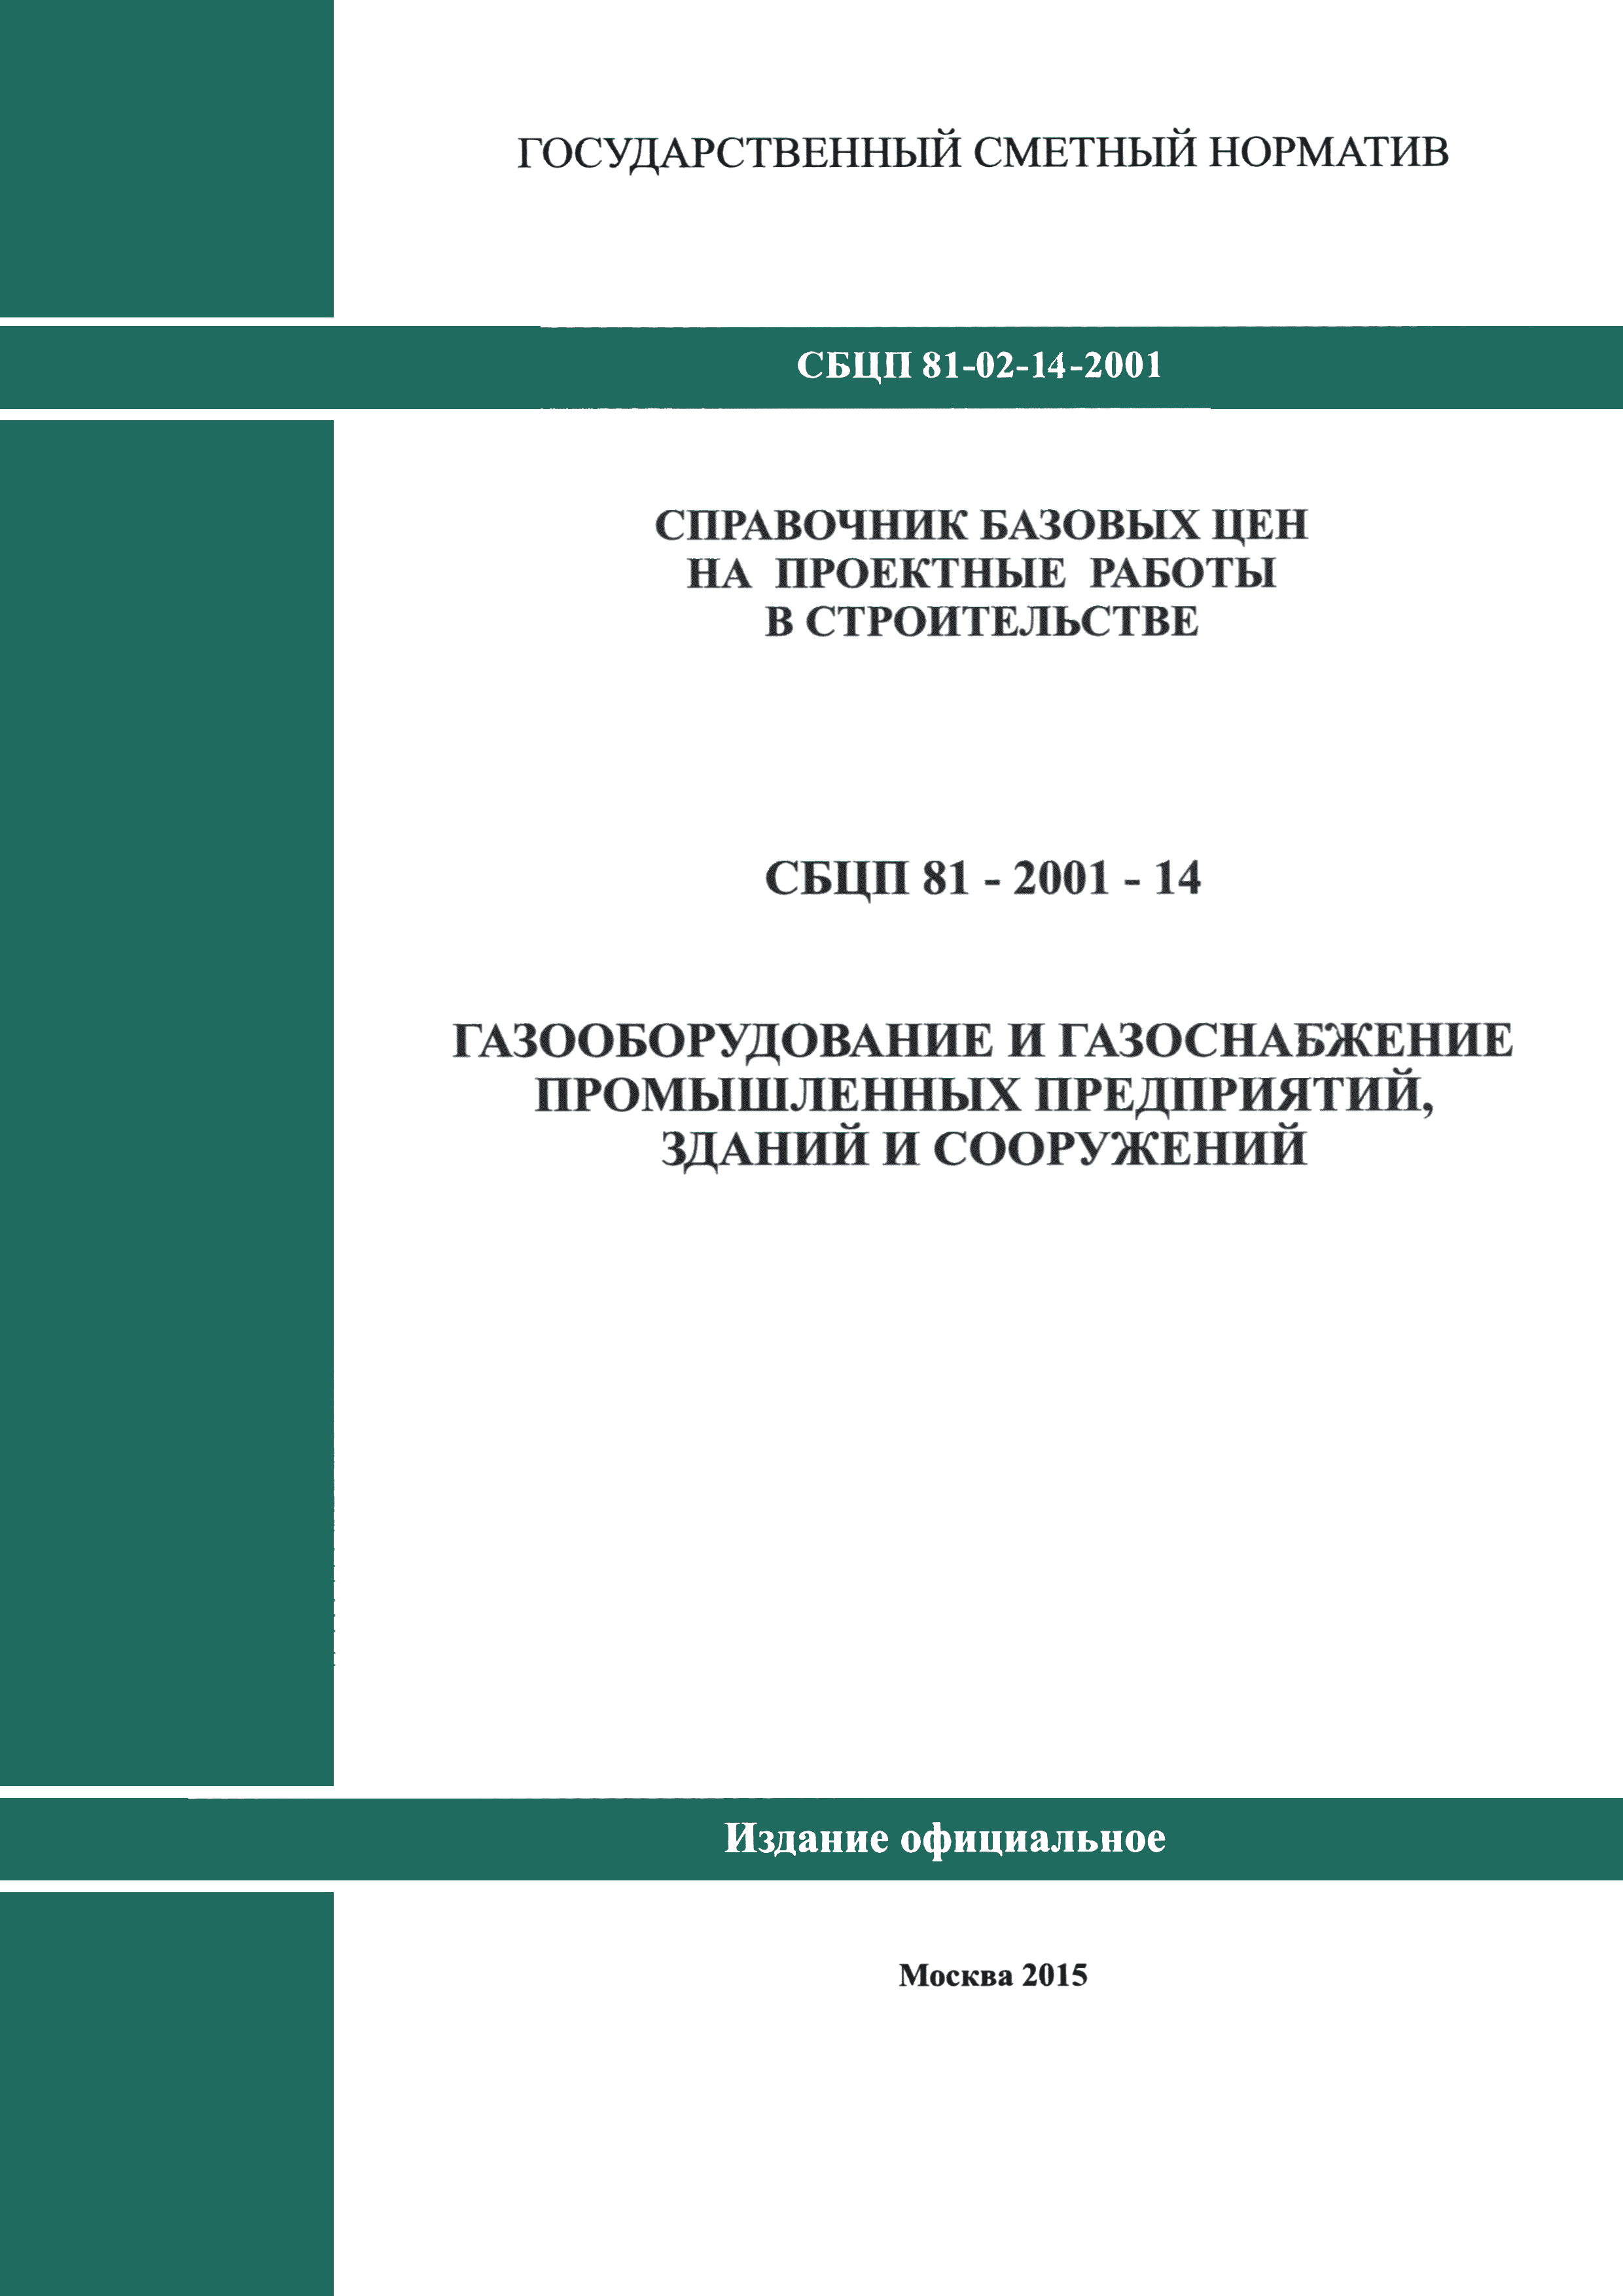 Сбцп 81 2001 03 справочник